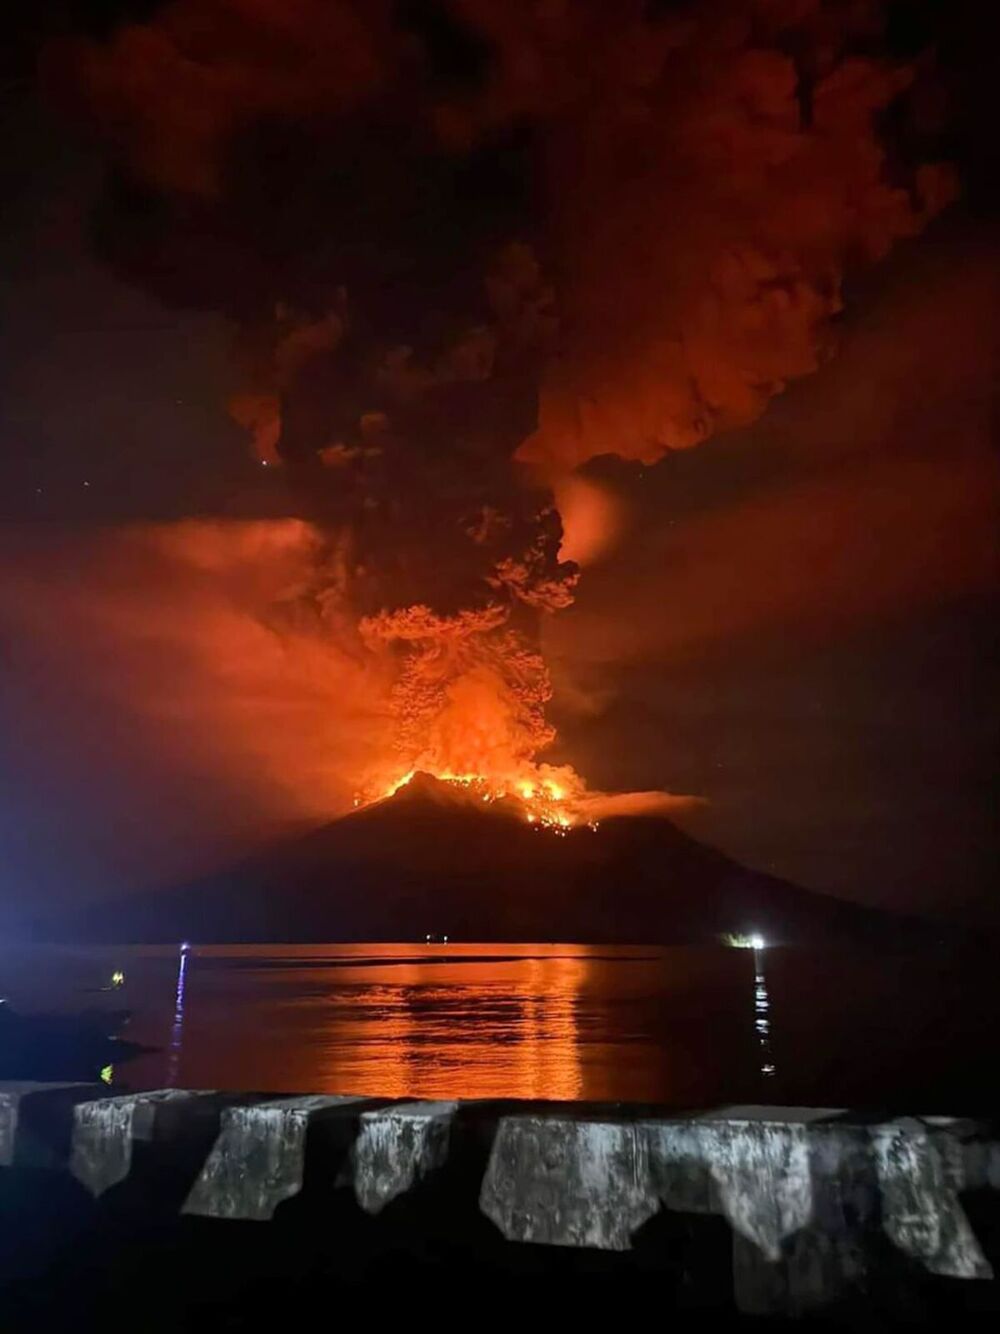 Indonesia, en alerta máxima por la erupción del volcán Ruang